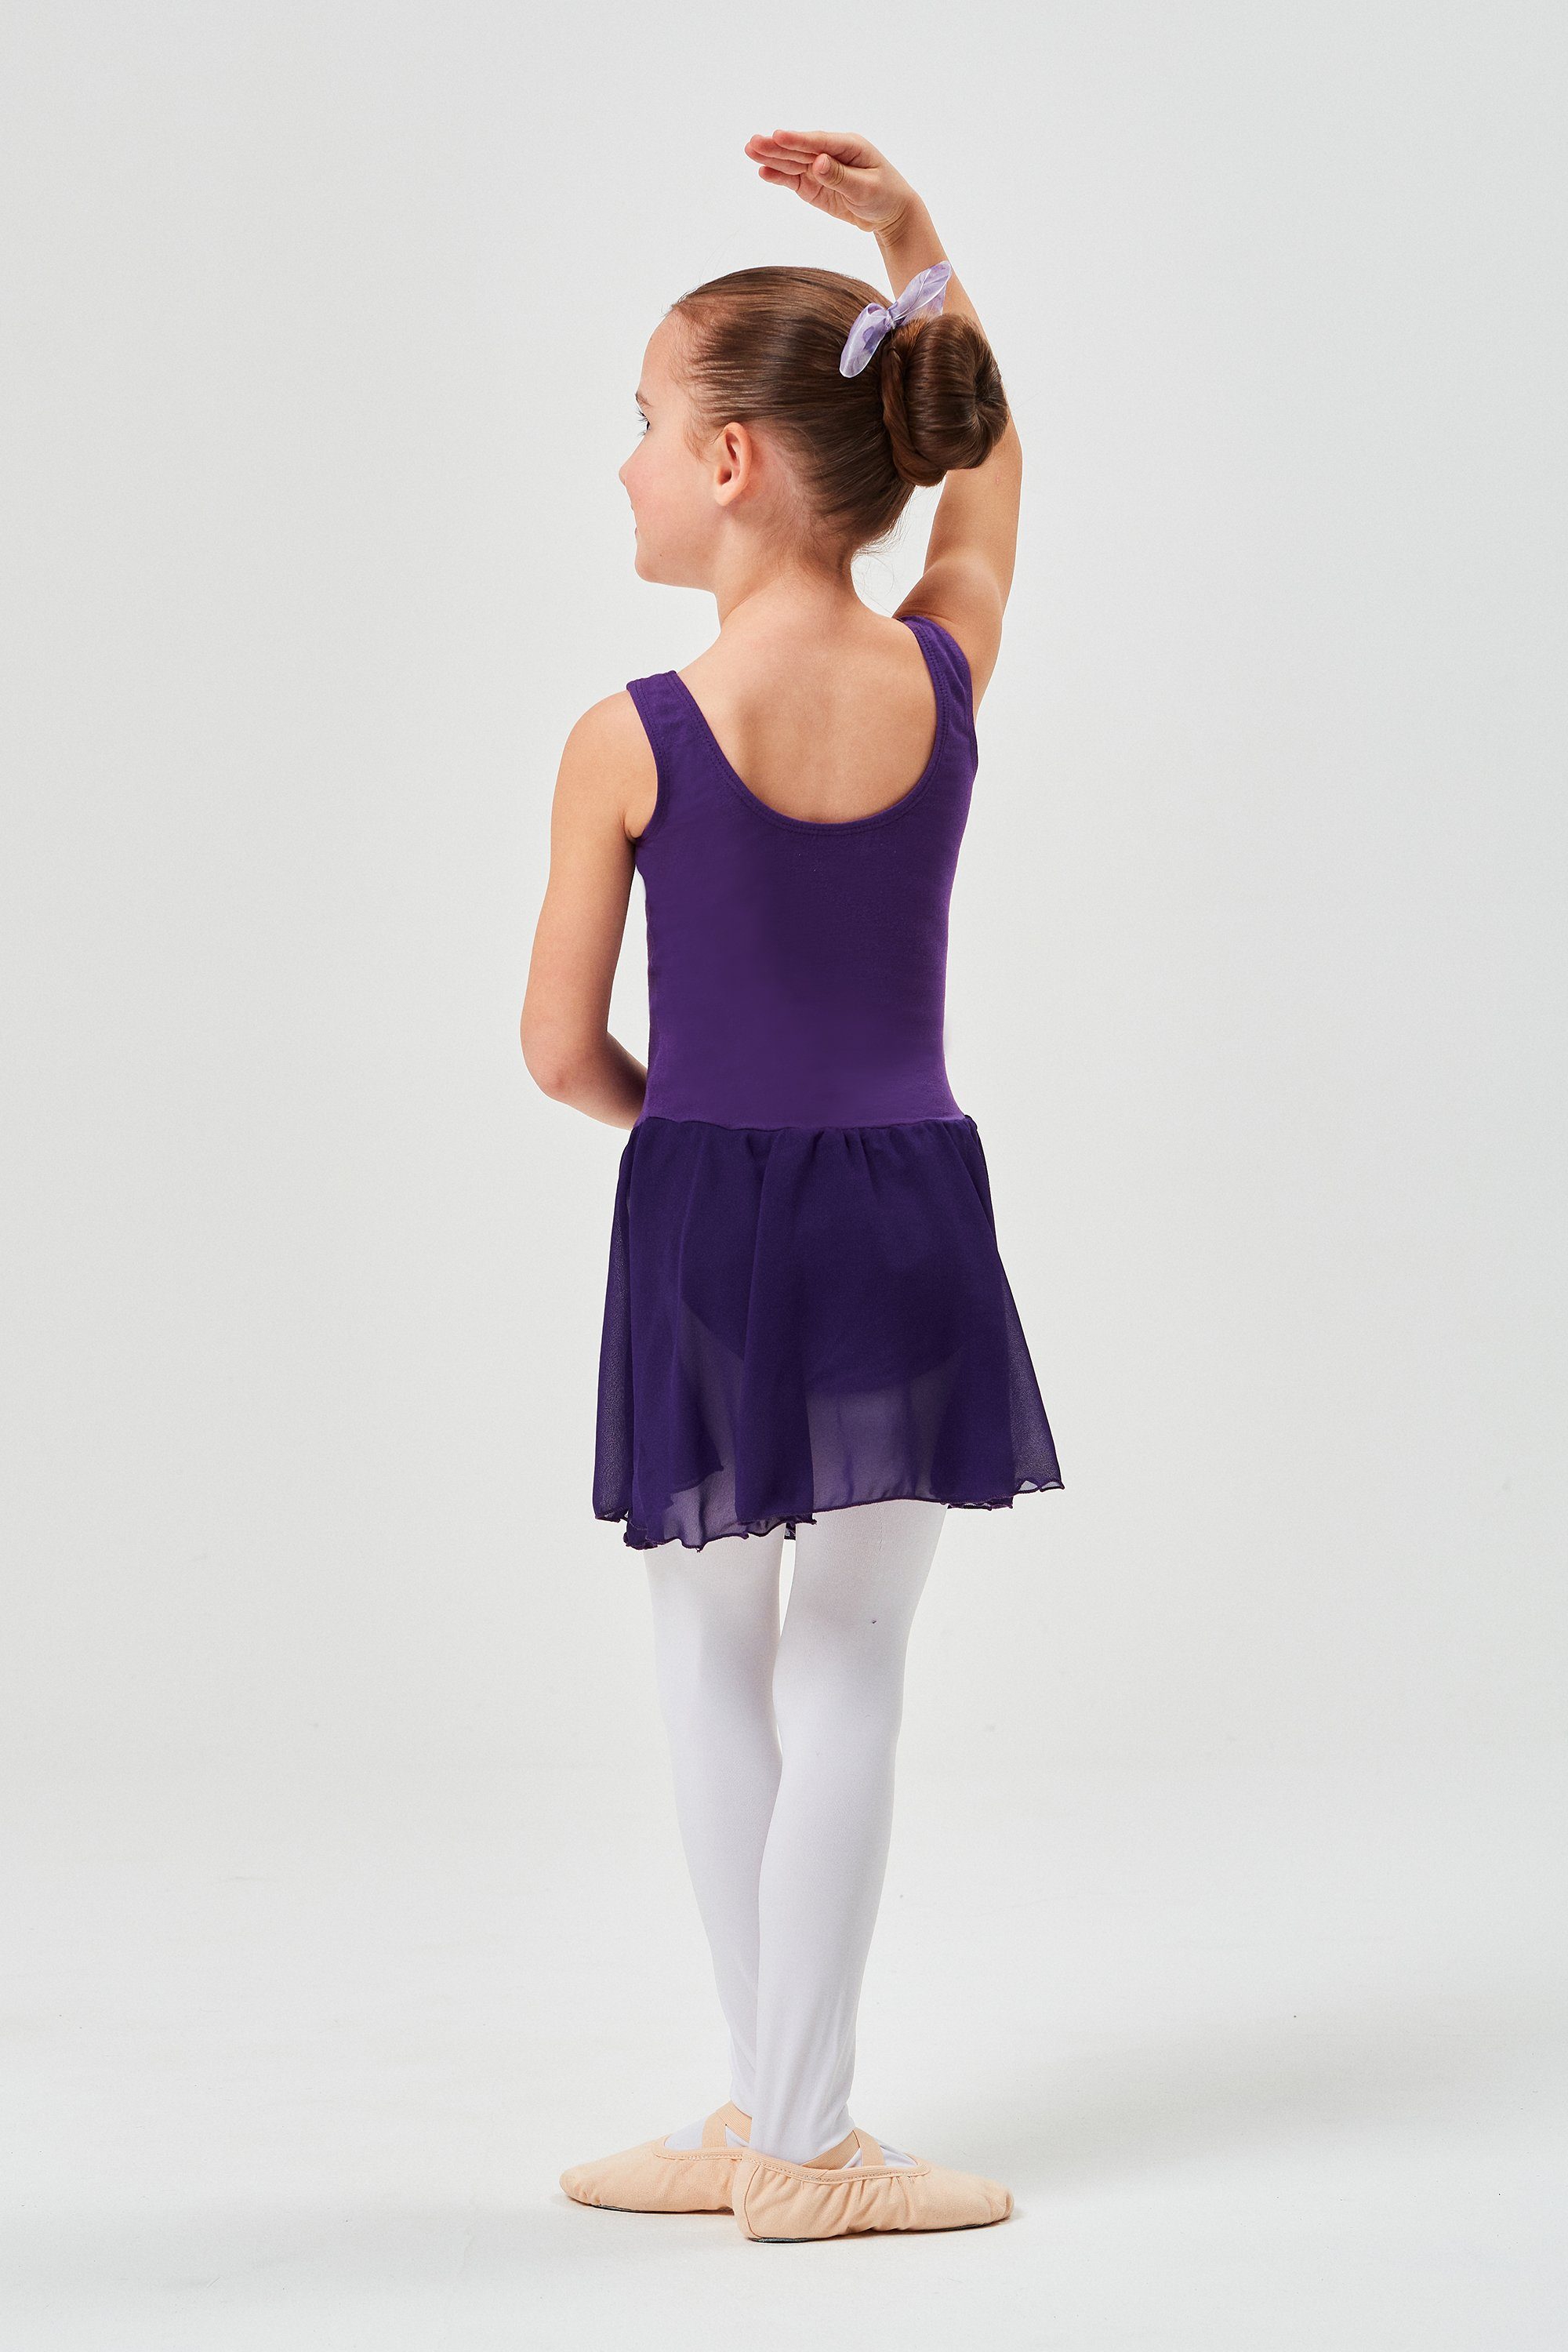 Minnie Baumwollmaterial mit Ballett tanzmuster weichem Mädchen Ballettkleid wunderbar für lila Trikot Chiffon Chiffonkleid aus Röckchen